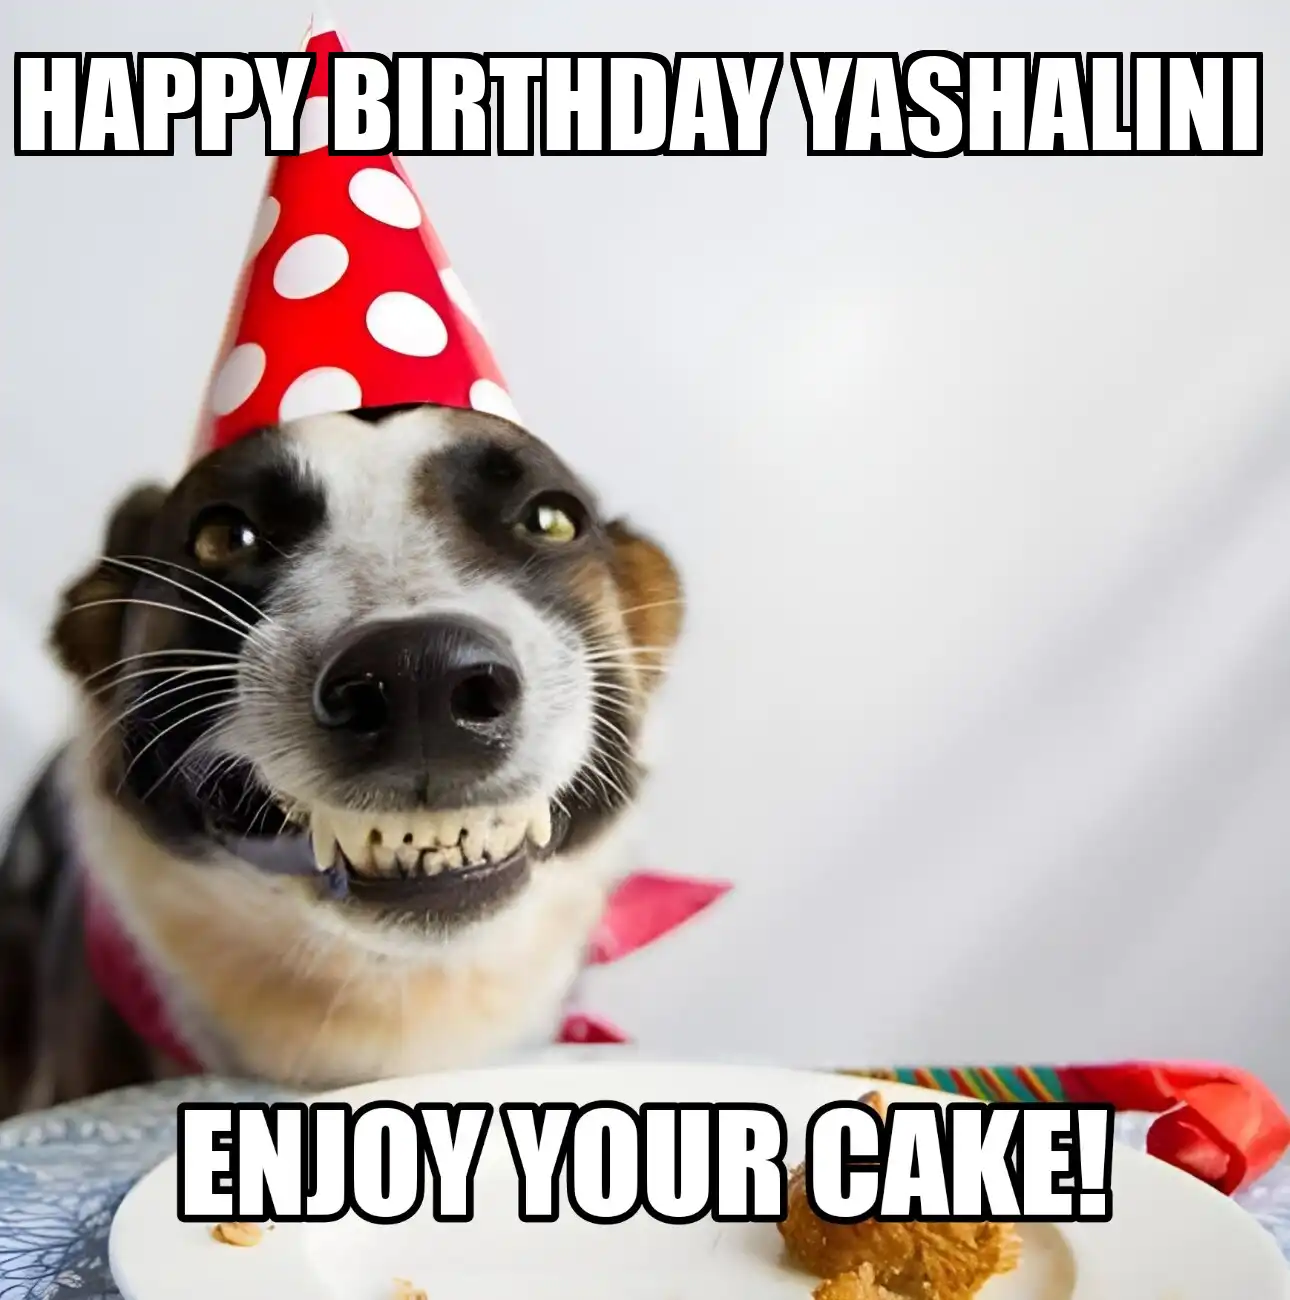 Happy Birthday Yashalini Enjoy Your Cake Dog Meme